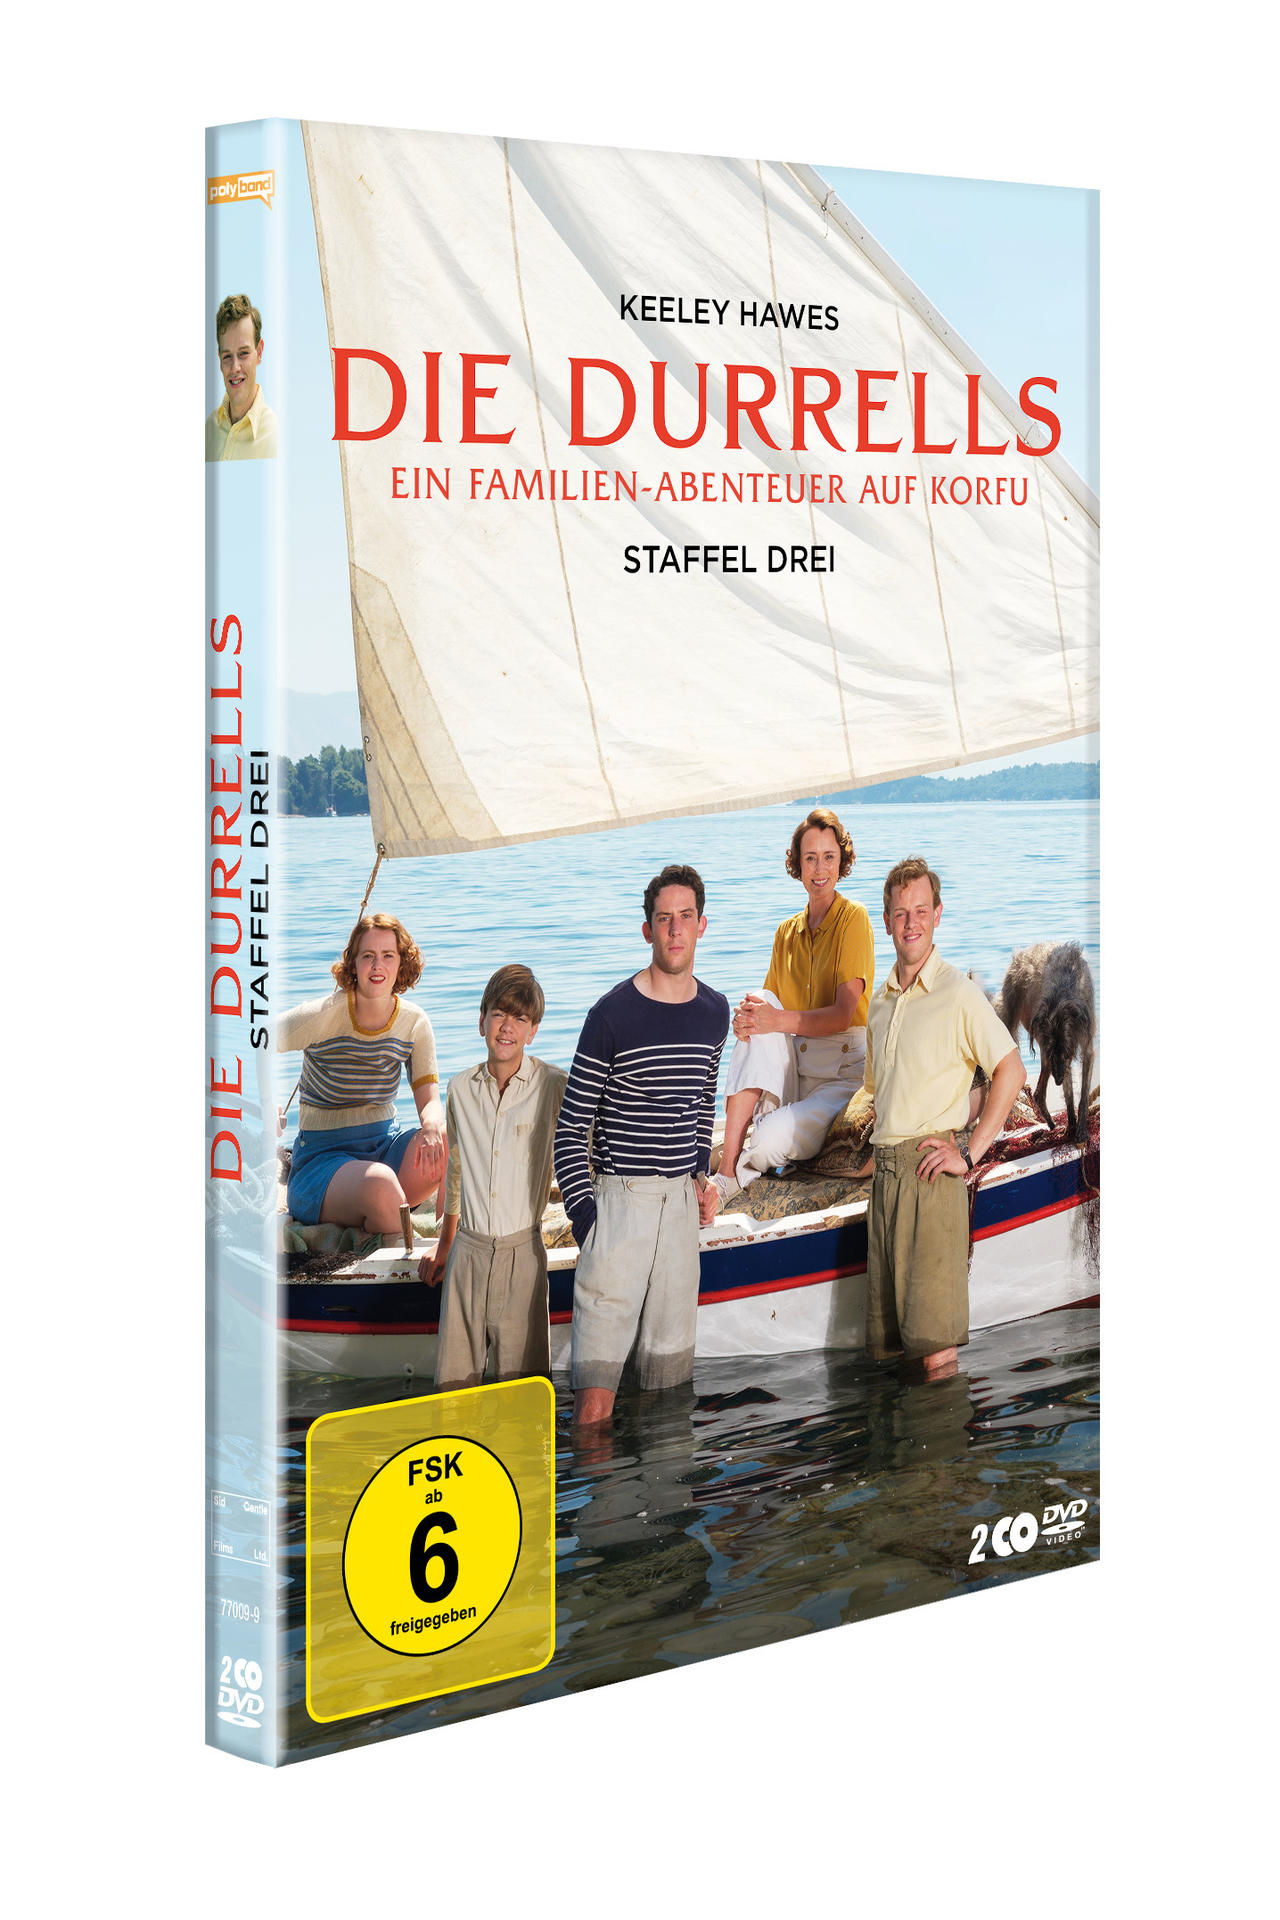 DVD - Staffel 3 Durrells Die